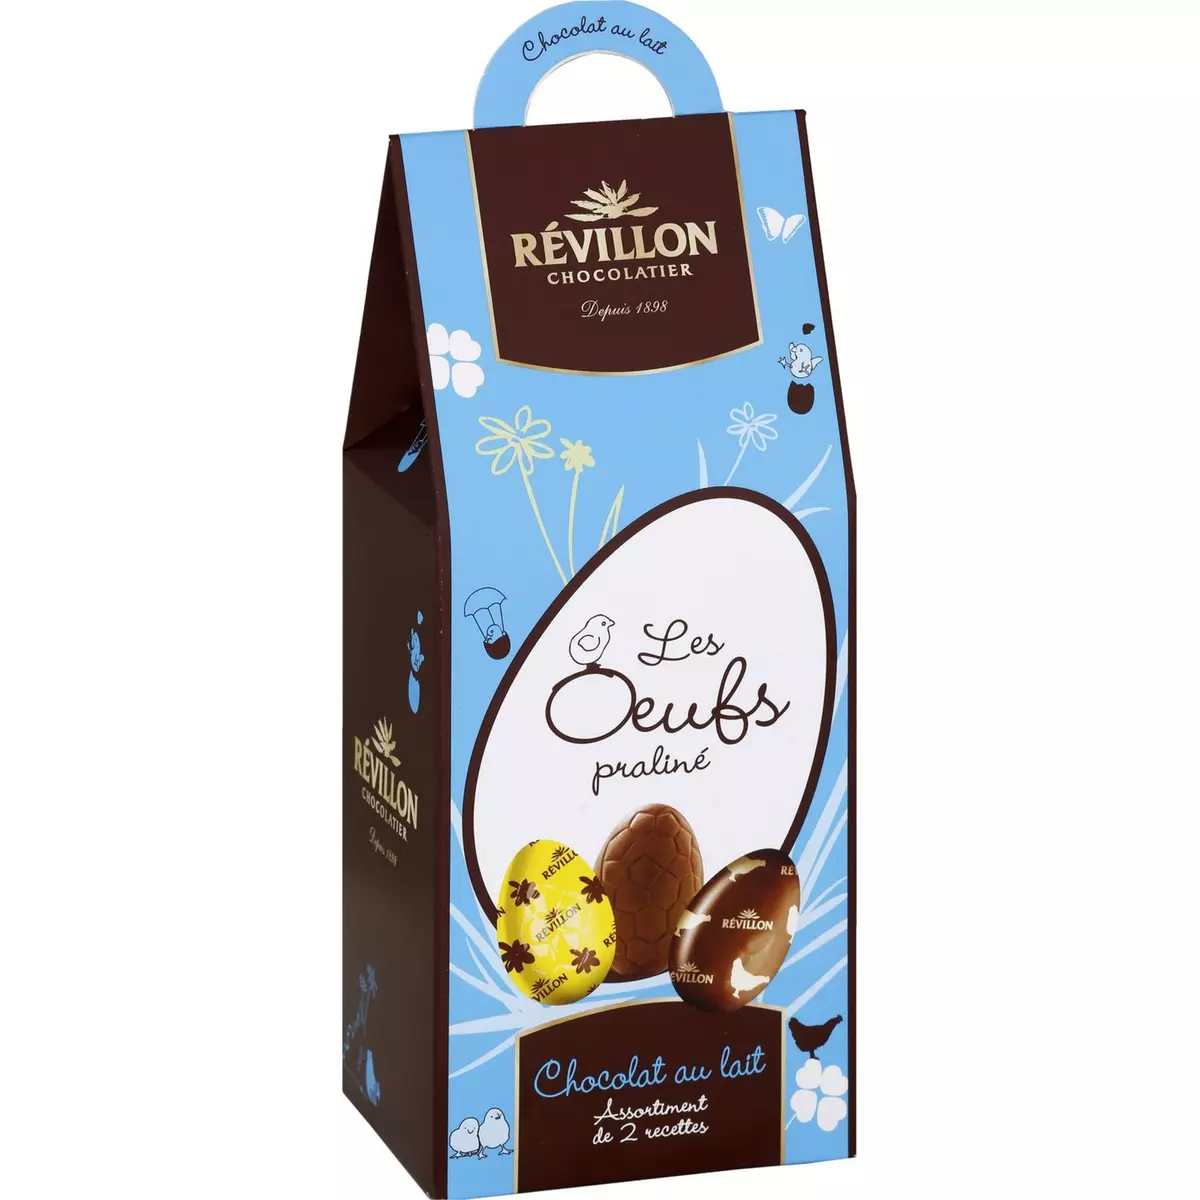 REVILLON Revillon Les petits oeufs assortiment chocolat au lait 190g